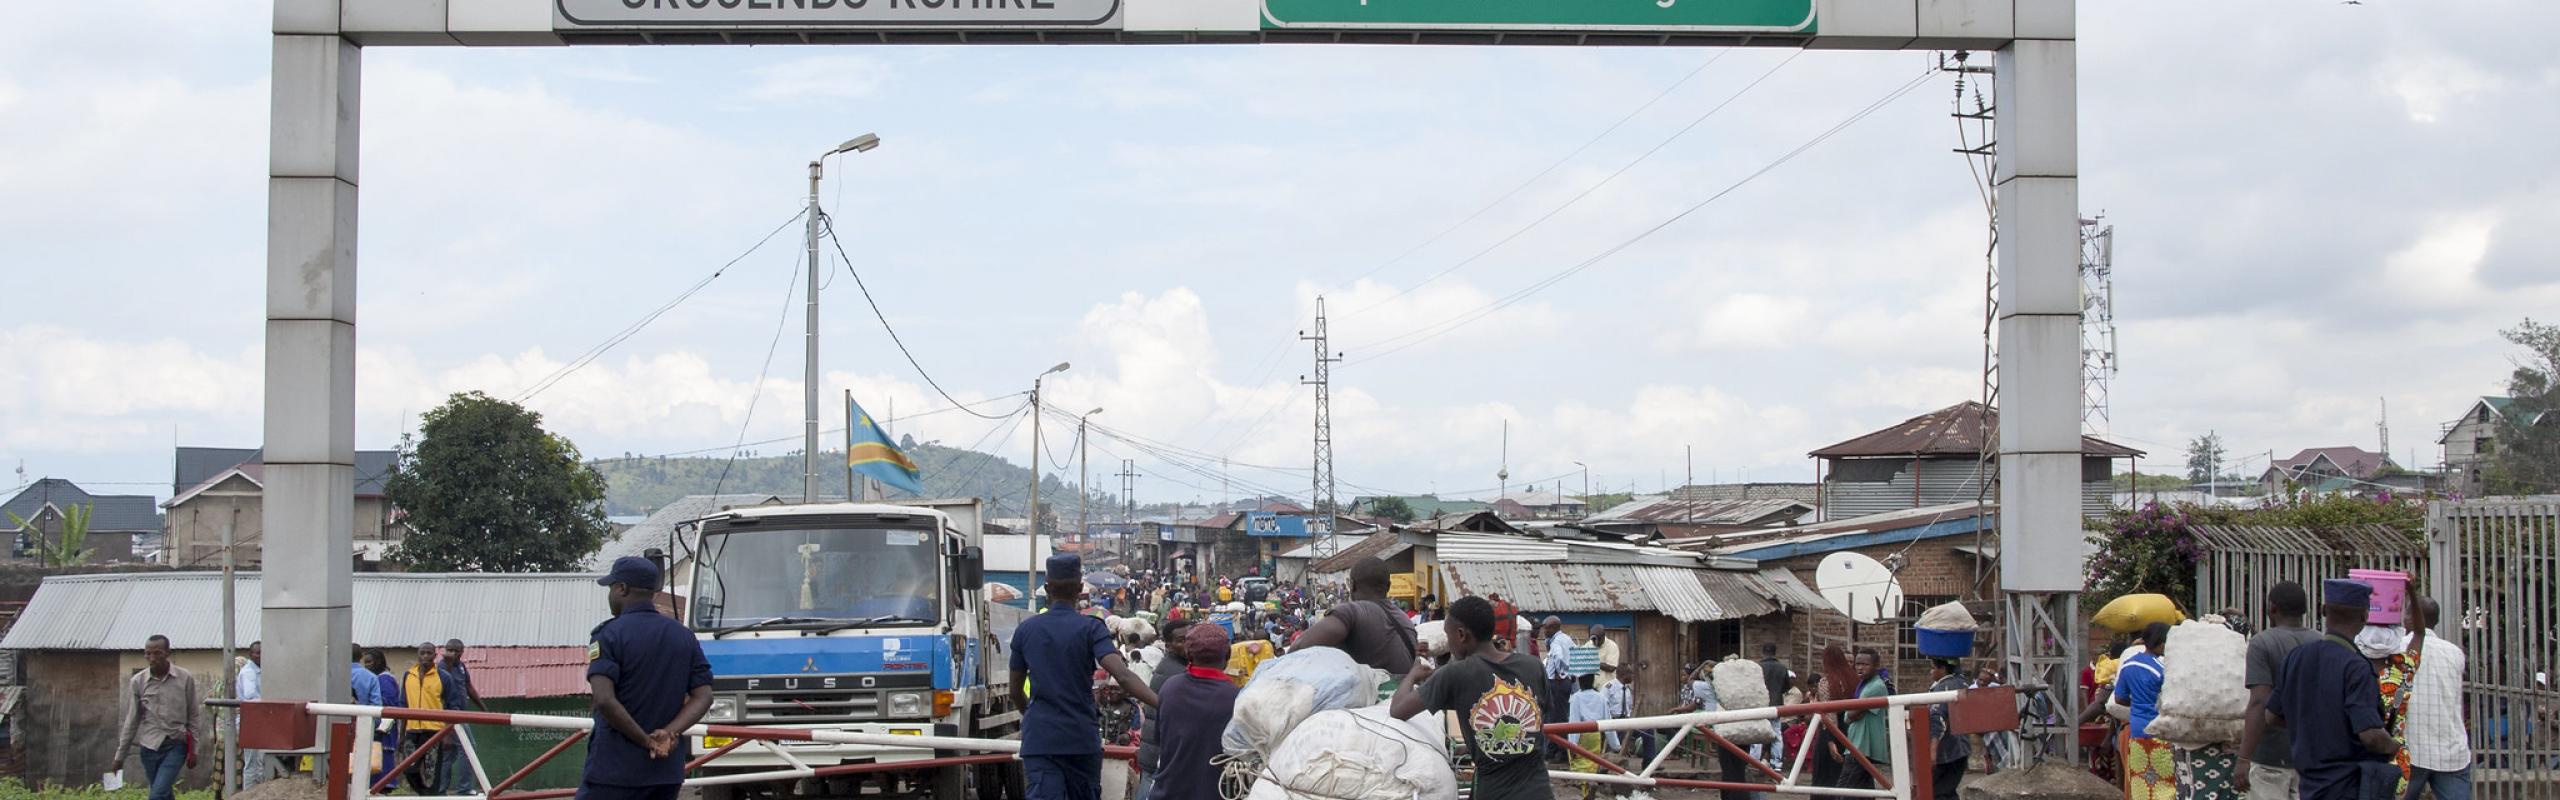 Des camions attendent à la frontière du Rwanda et de la RDC